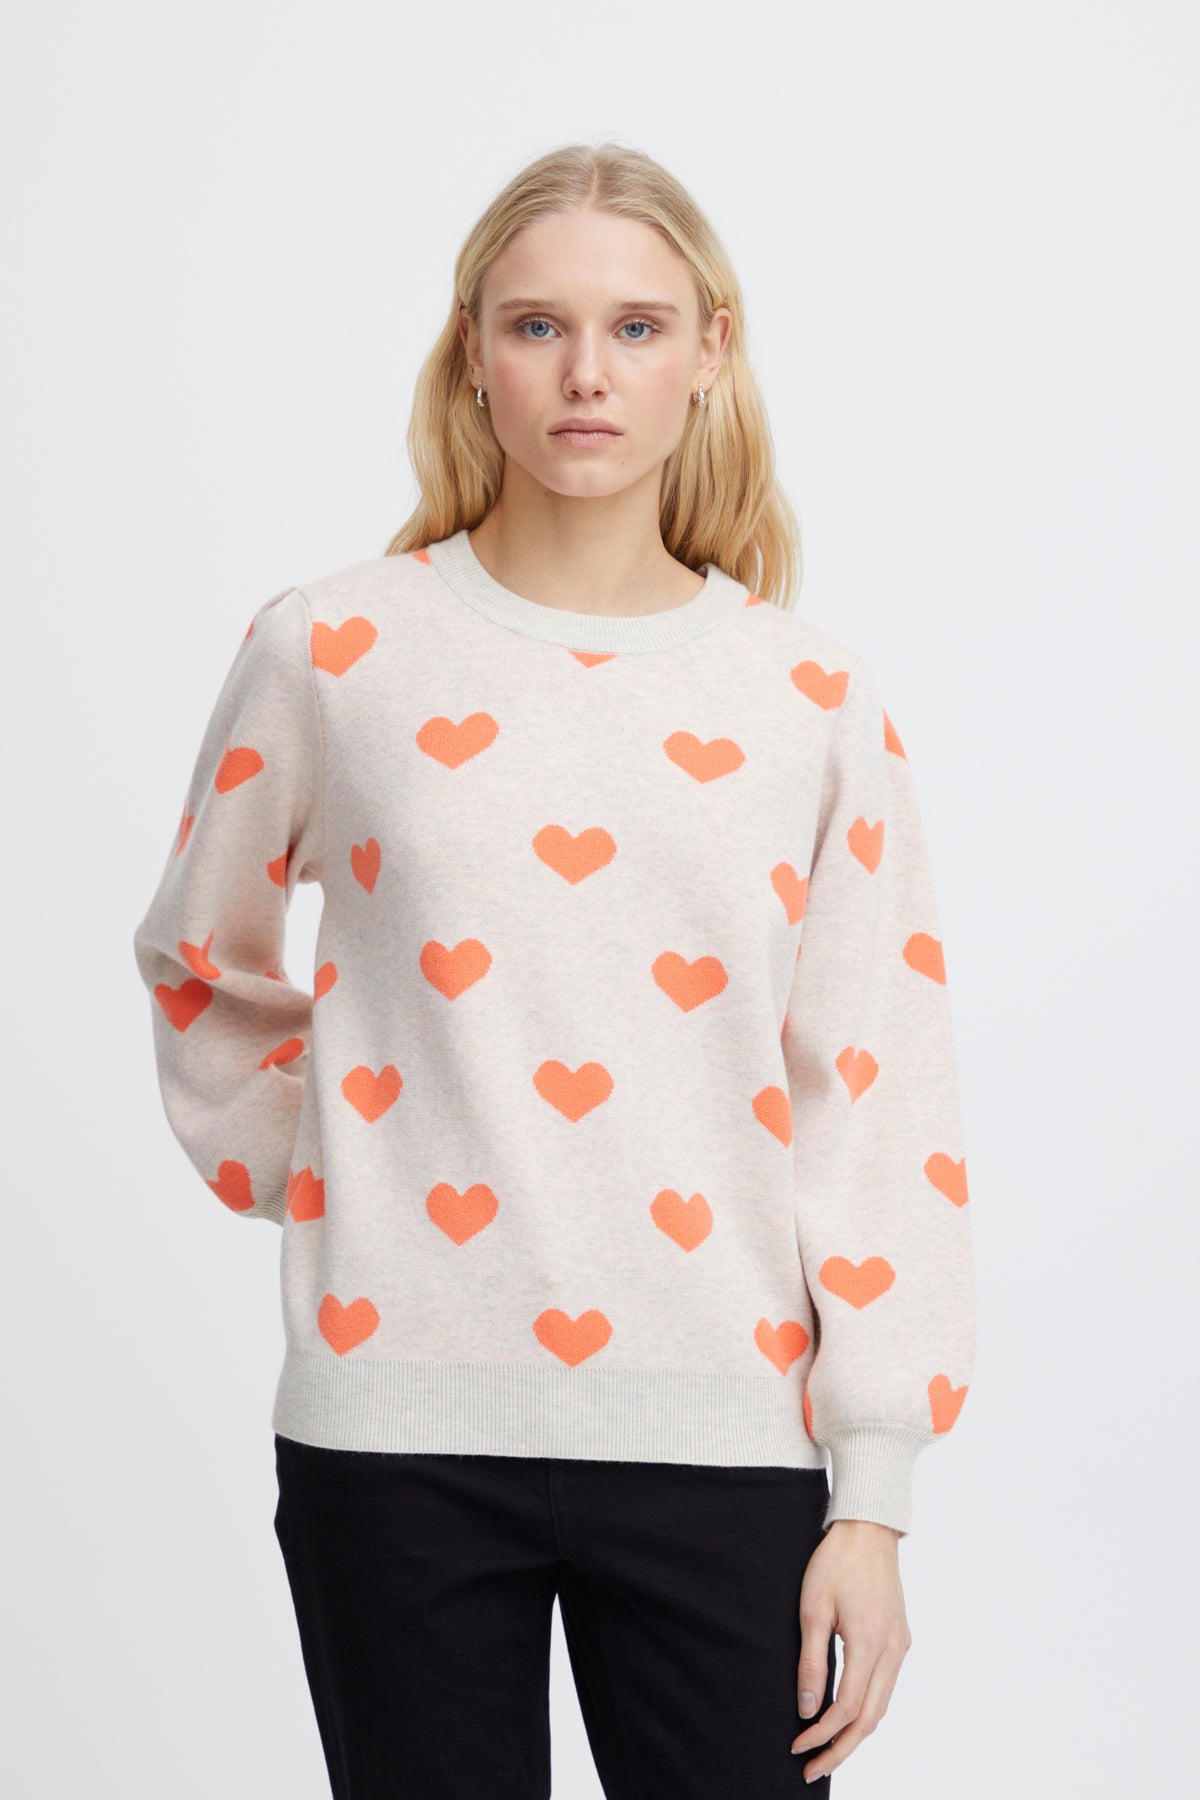 Brielle Heart Sweatshirt in Oatmeal/Hot Coral